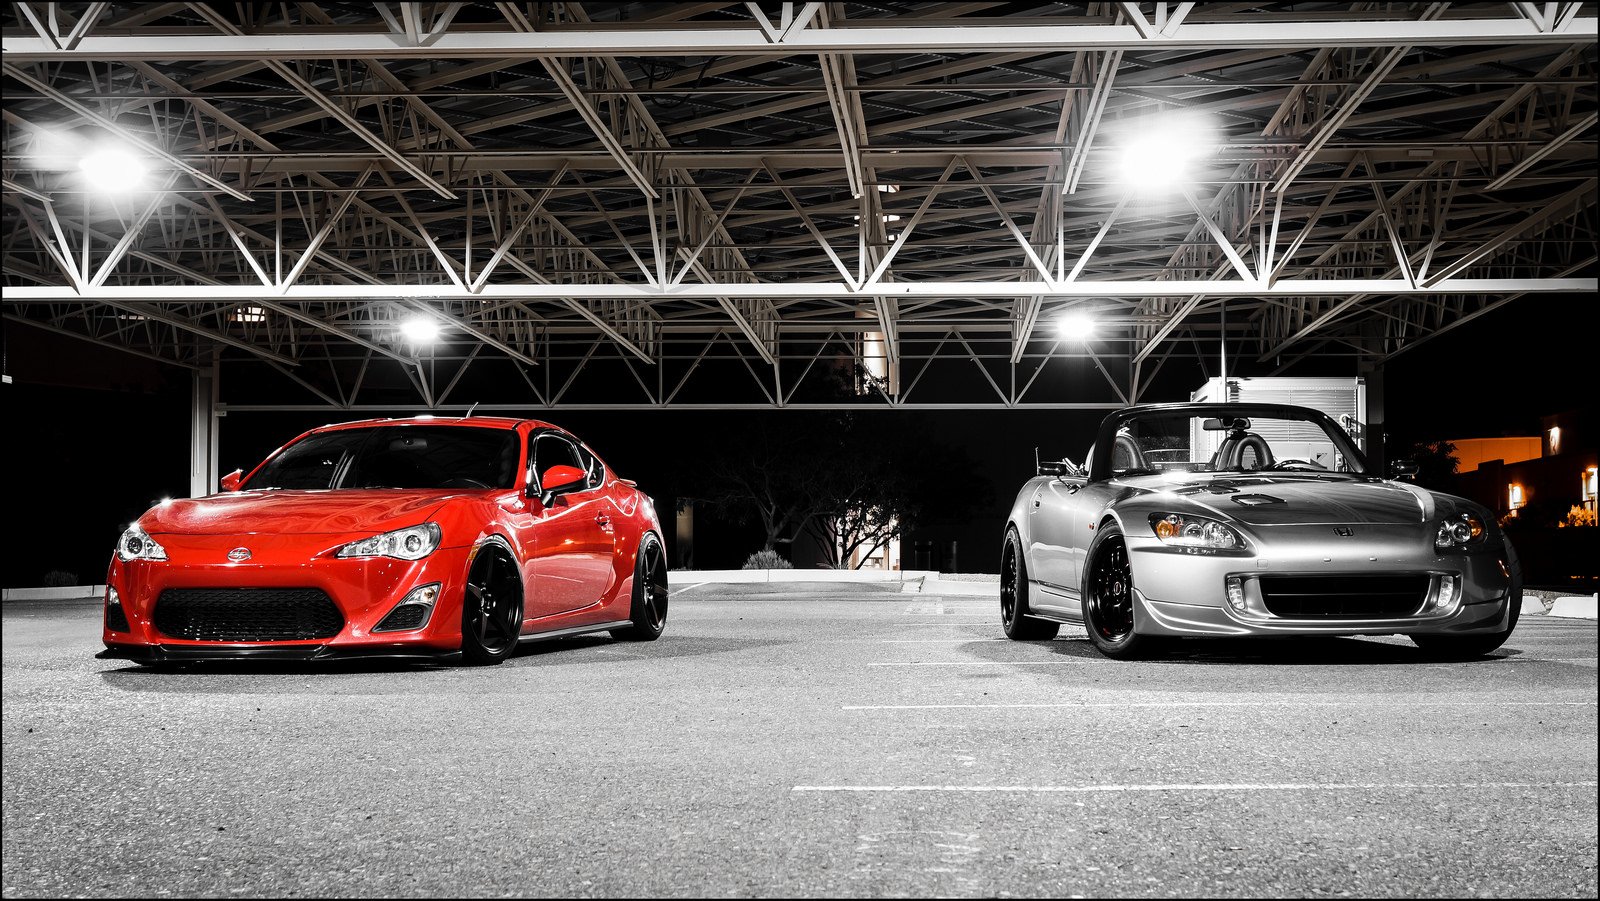 honda, S2000, Roadster, Cars, Tuning, Japan Wallpaper